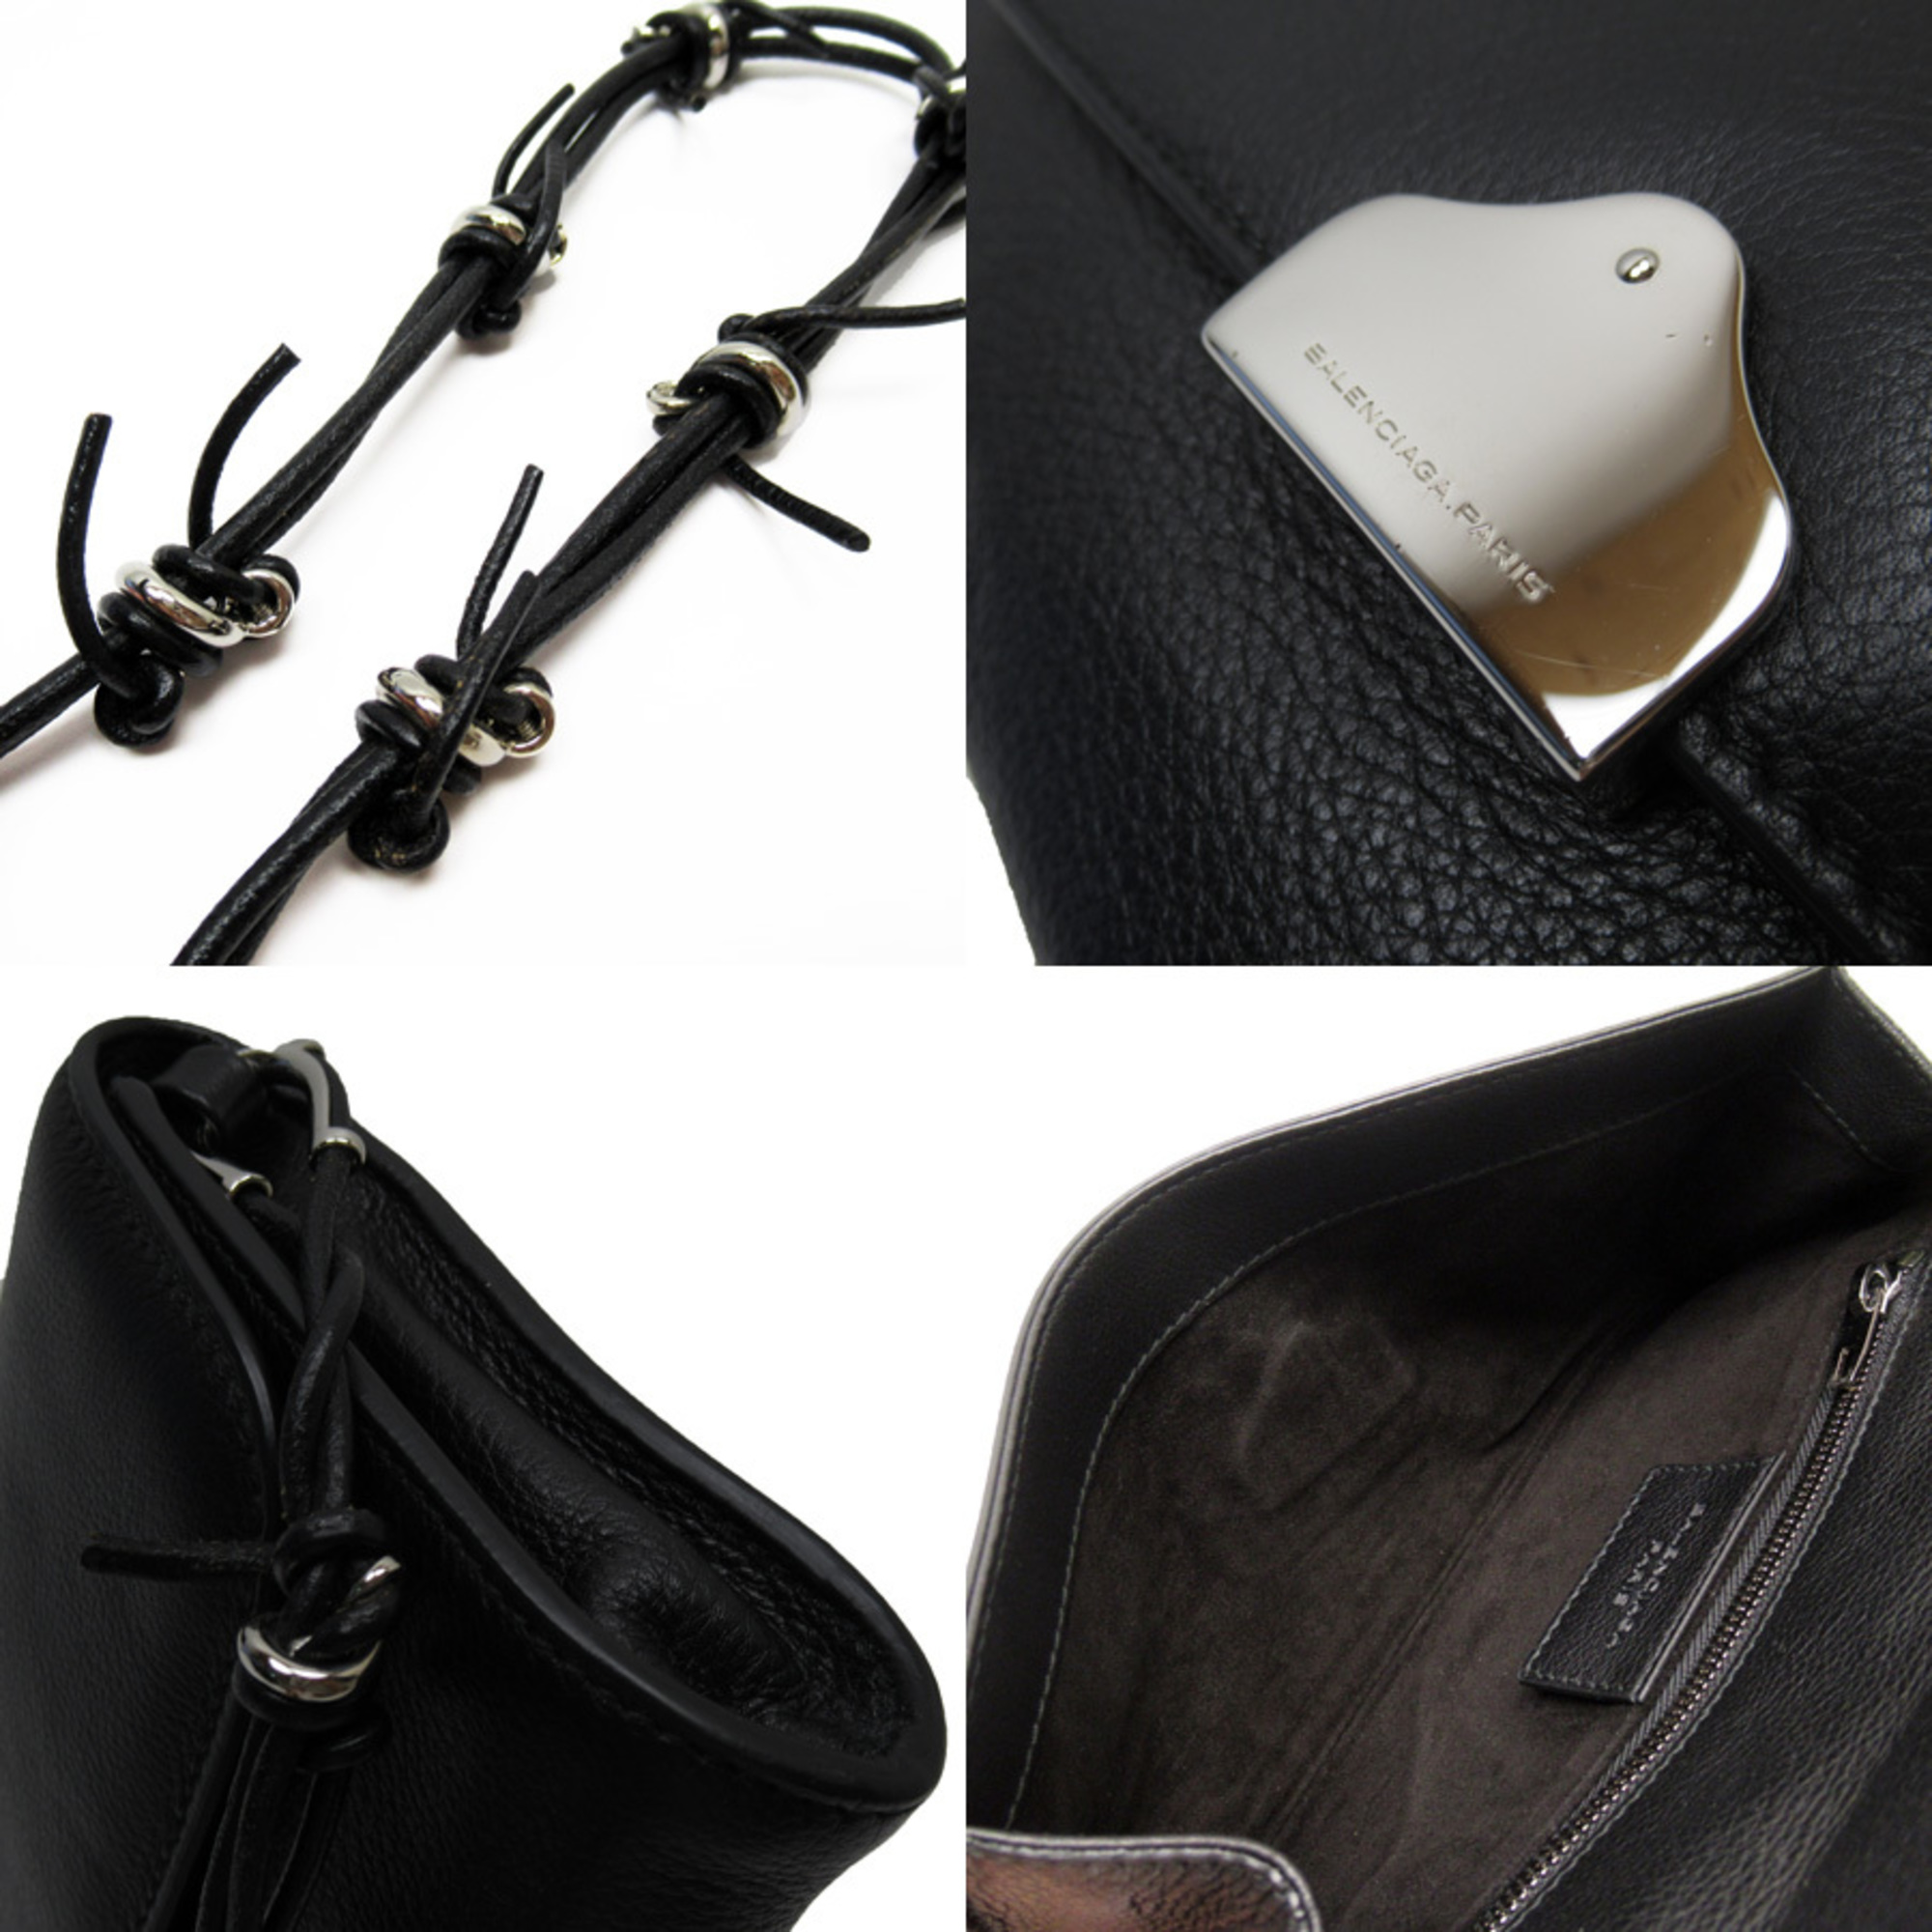 Balenciaga BALENCIAGA shoulder bag black silver leather h22651